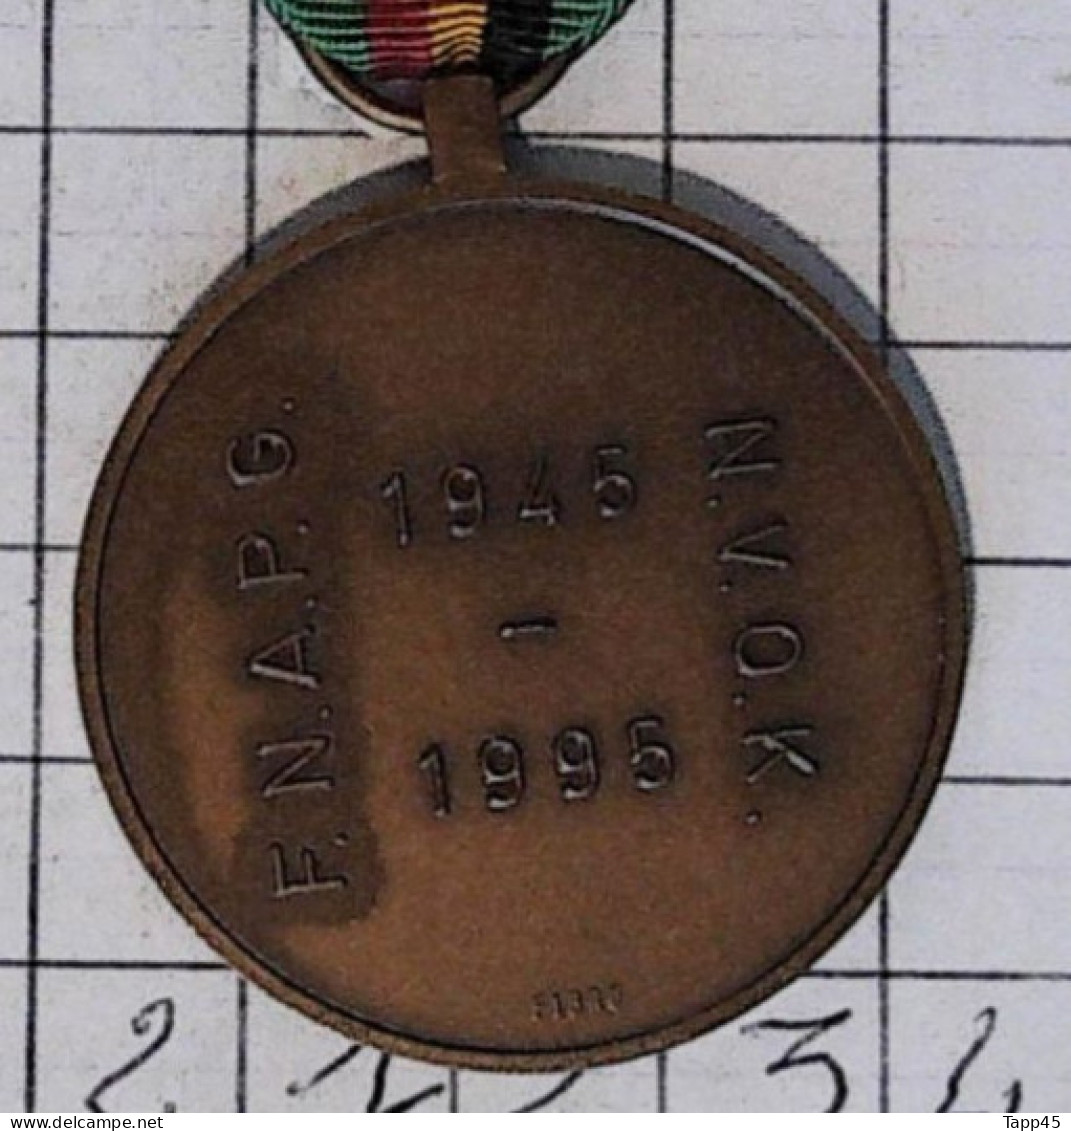 Médaille > prisonnier de guerre > Bronze > Réf:Cl Belge  Pl 5/4